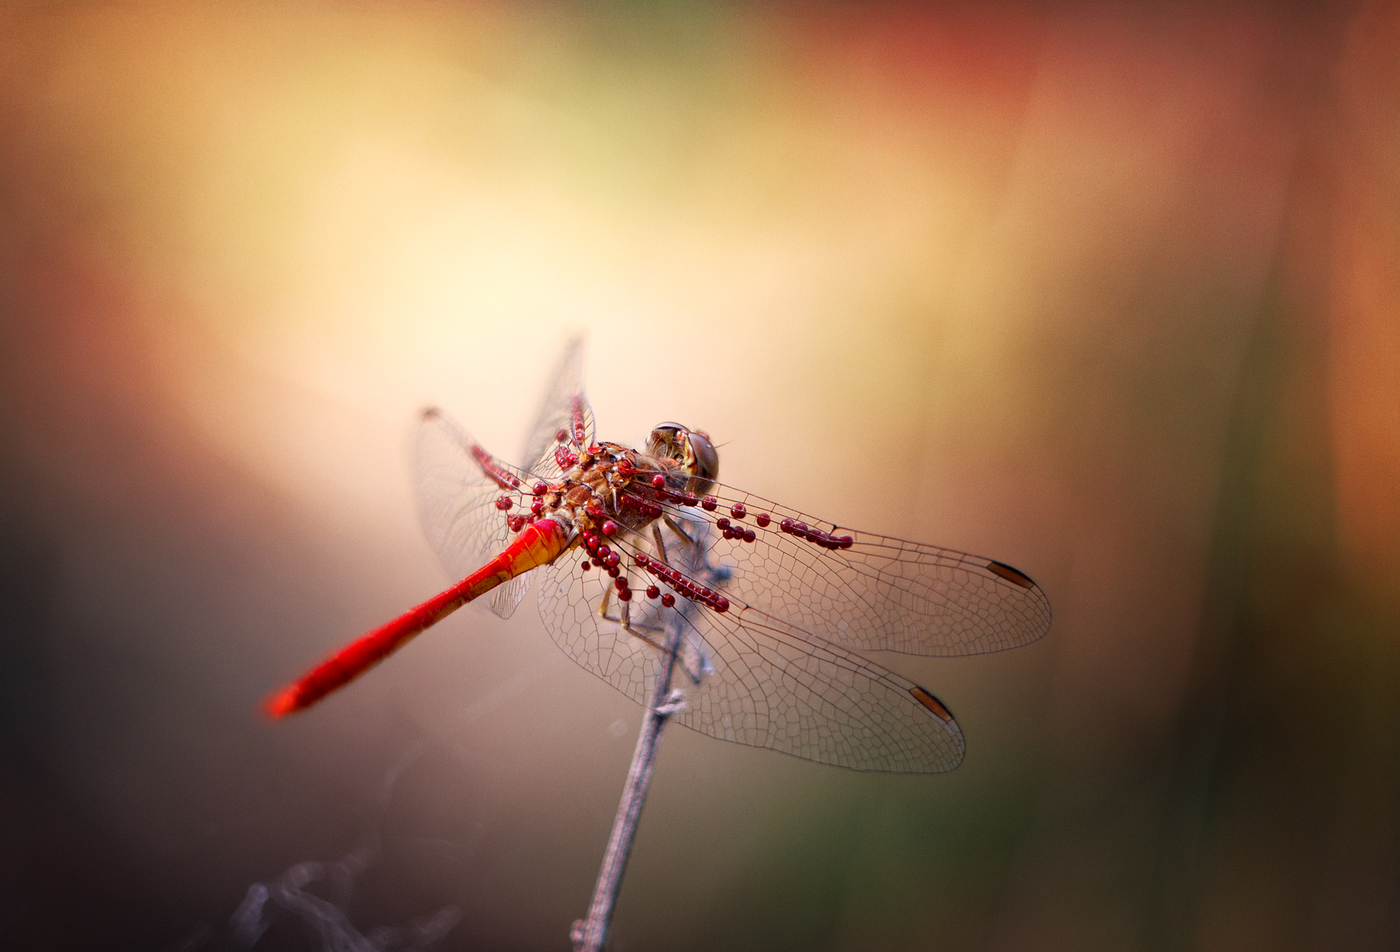 Dragonflies imaju neprijatelje; na krilima larve parazita - pršuta